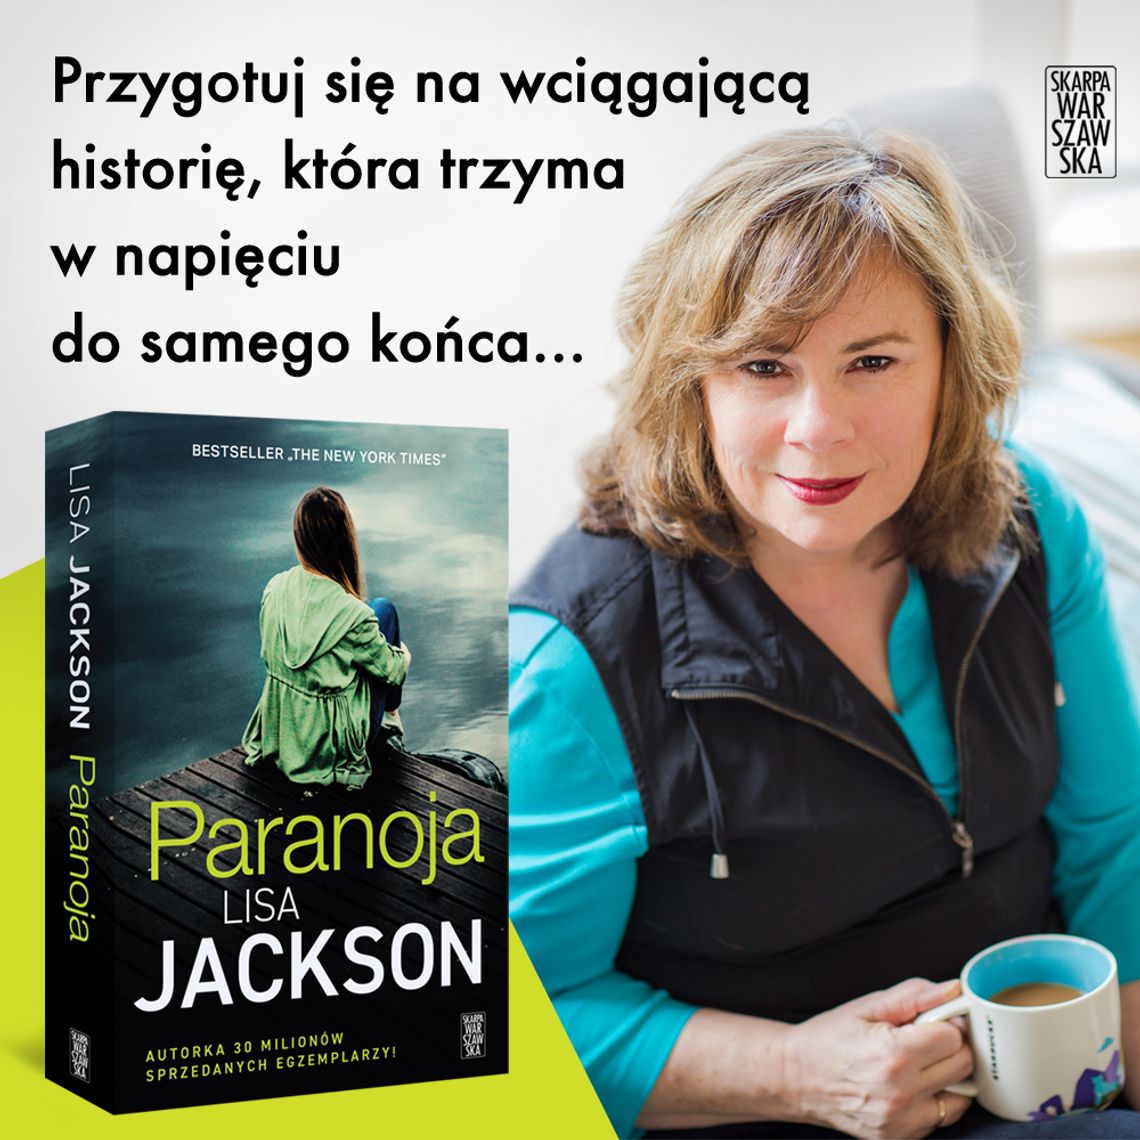 Prawda może okazać się o wiele mroczniejsza niż najgorsze lęki...  Premiera książki "Paranoja" Lisy Jackson